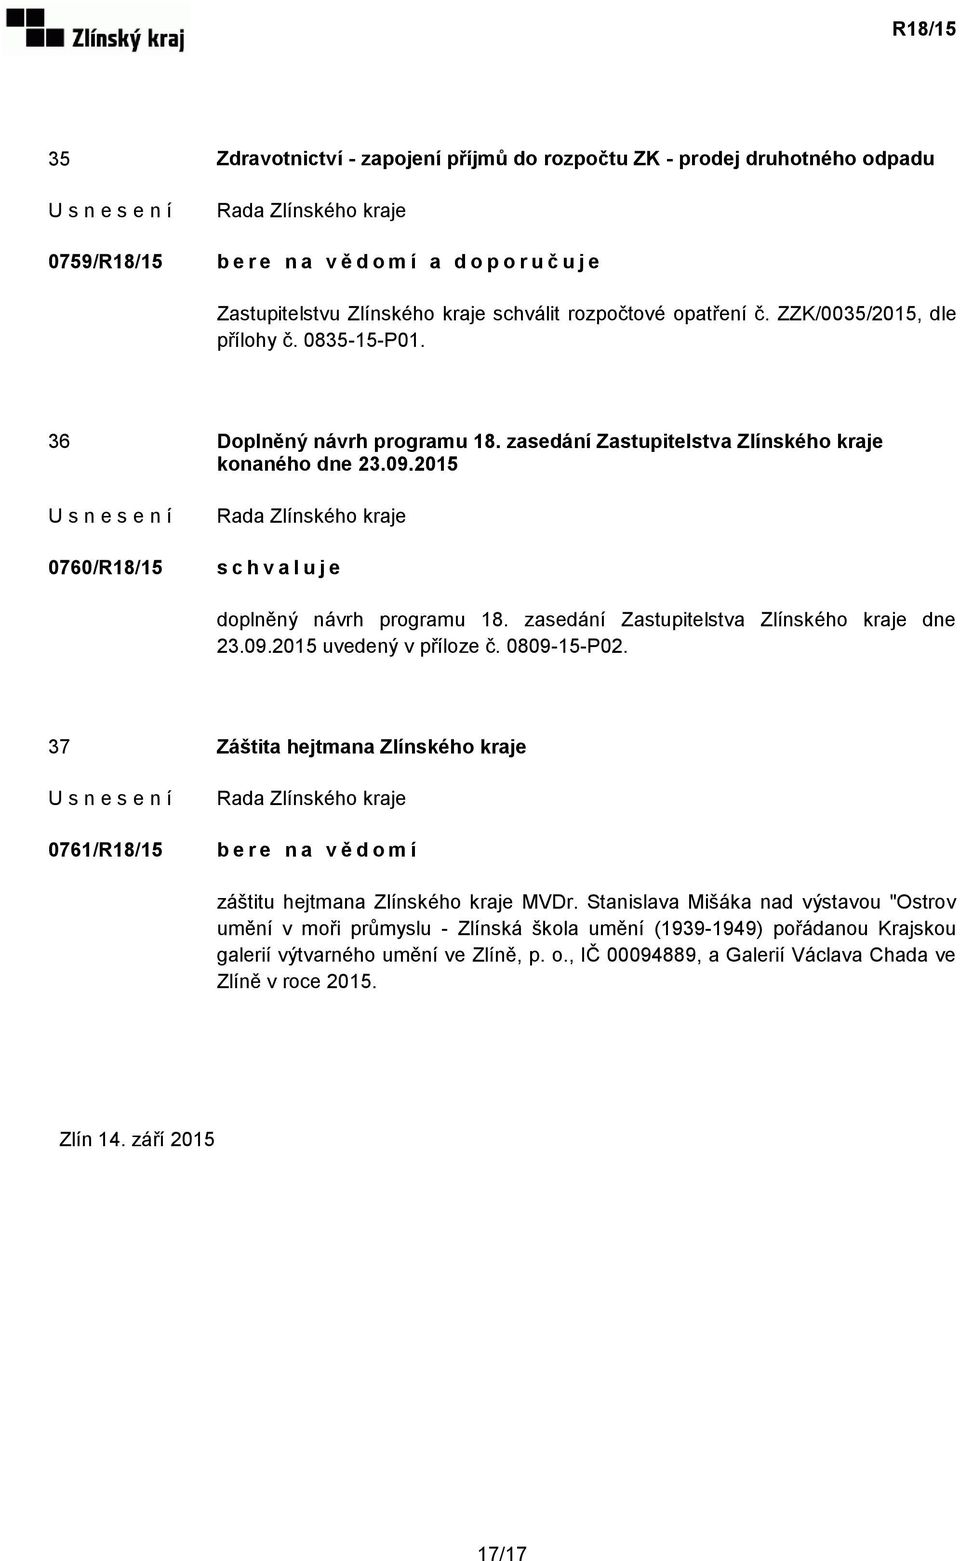 zasedání Zastupitelstva Zlínského kraje dne 23.09.2015 uvedený v příloze č. 0809-15-P02.